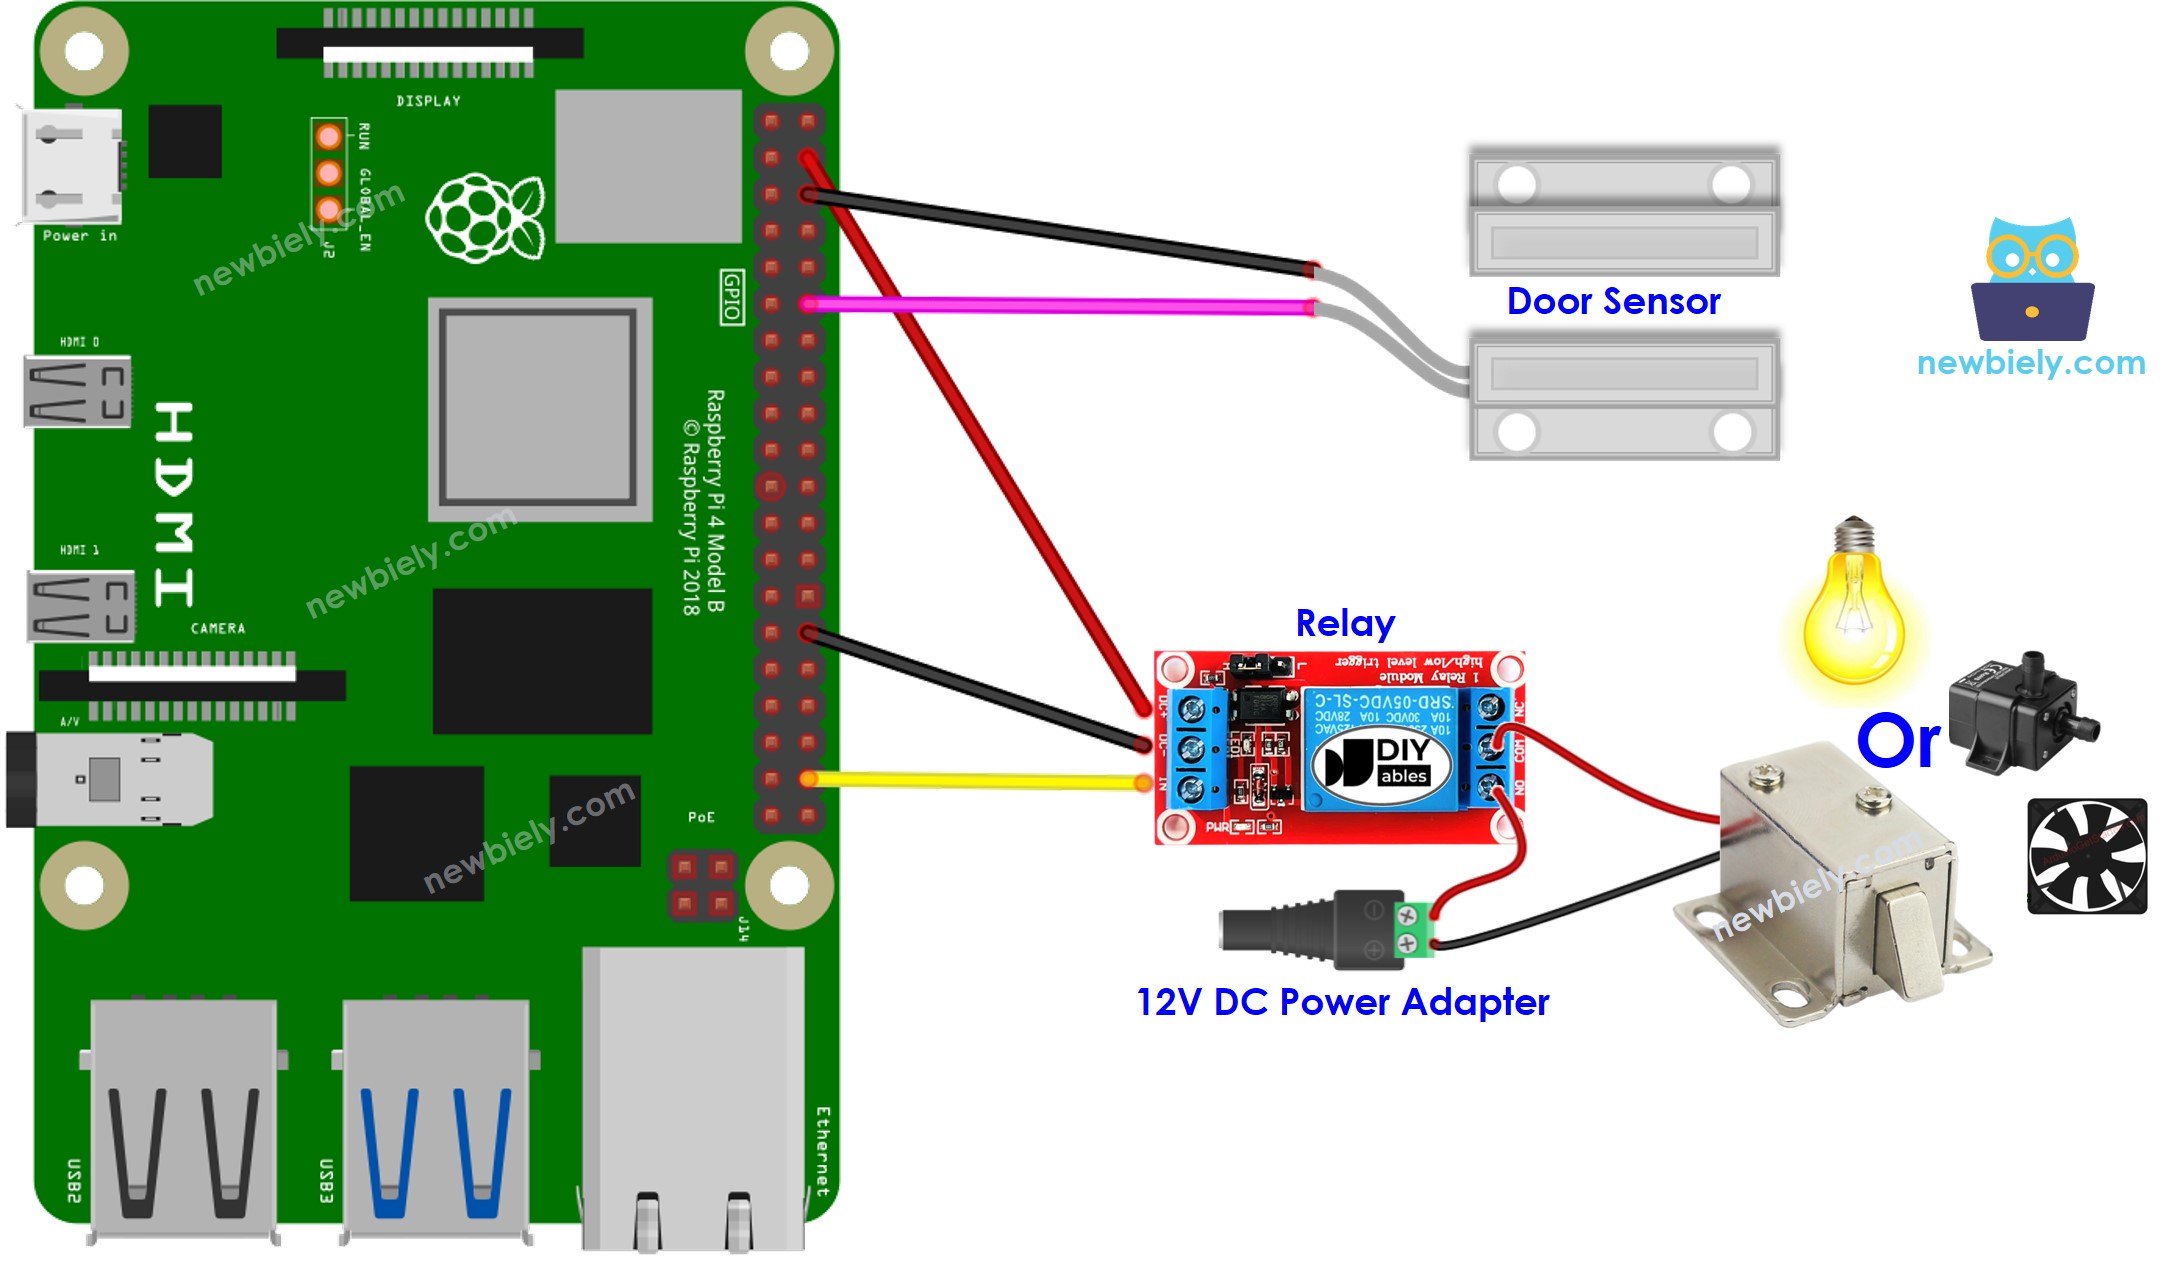 The wiring diagram between Raspberry Pi and Door Sensor relay